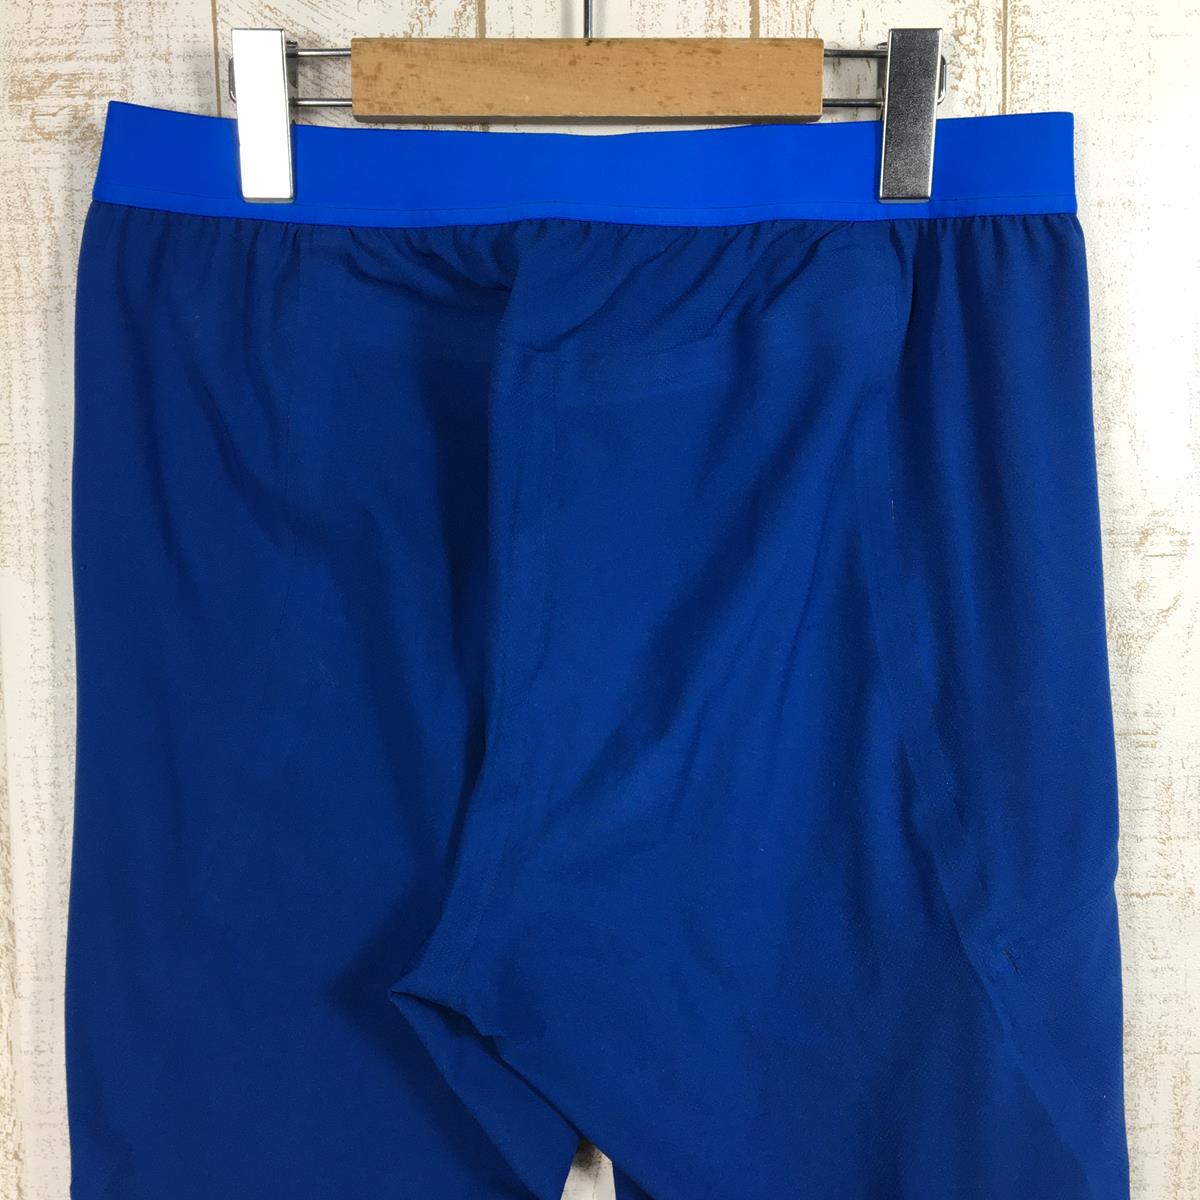 【MEN's 30】 パタゴニア テラヴィア ライト アルパイン パンツ Terravia Light Alpine Pants （アルトヴィア ライト アルパイン パンツ Altvia Light Alpine Pants） ソフトシェル ストレッチ PATAGONIA 83120 SPRB Superior Blue ブルー系